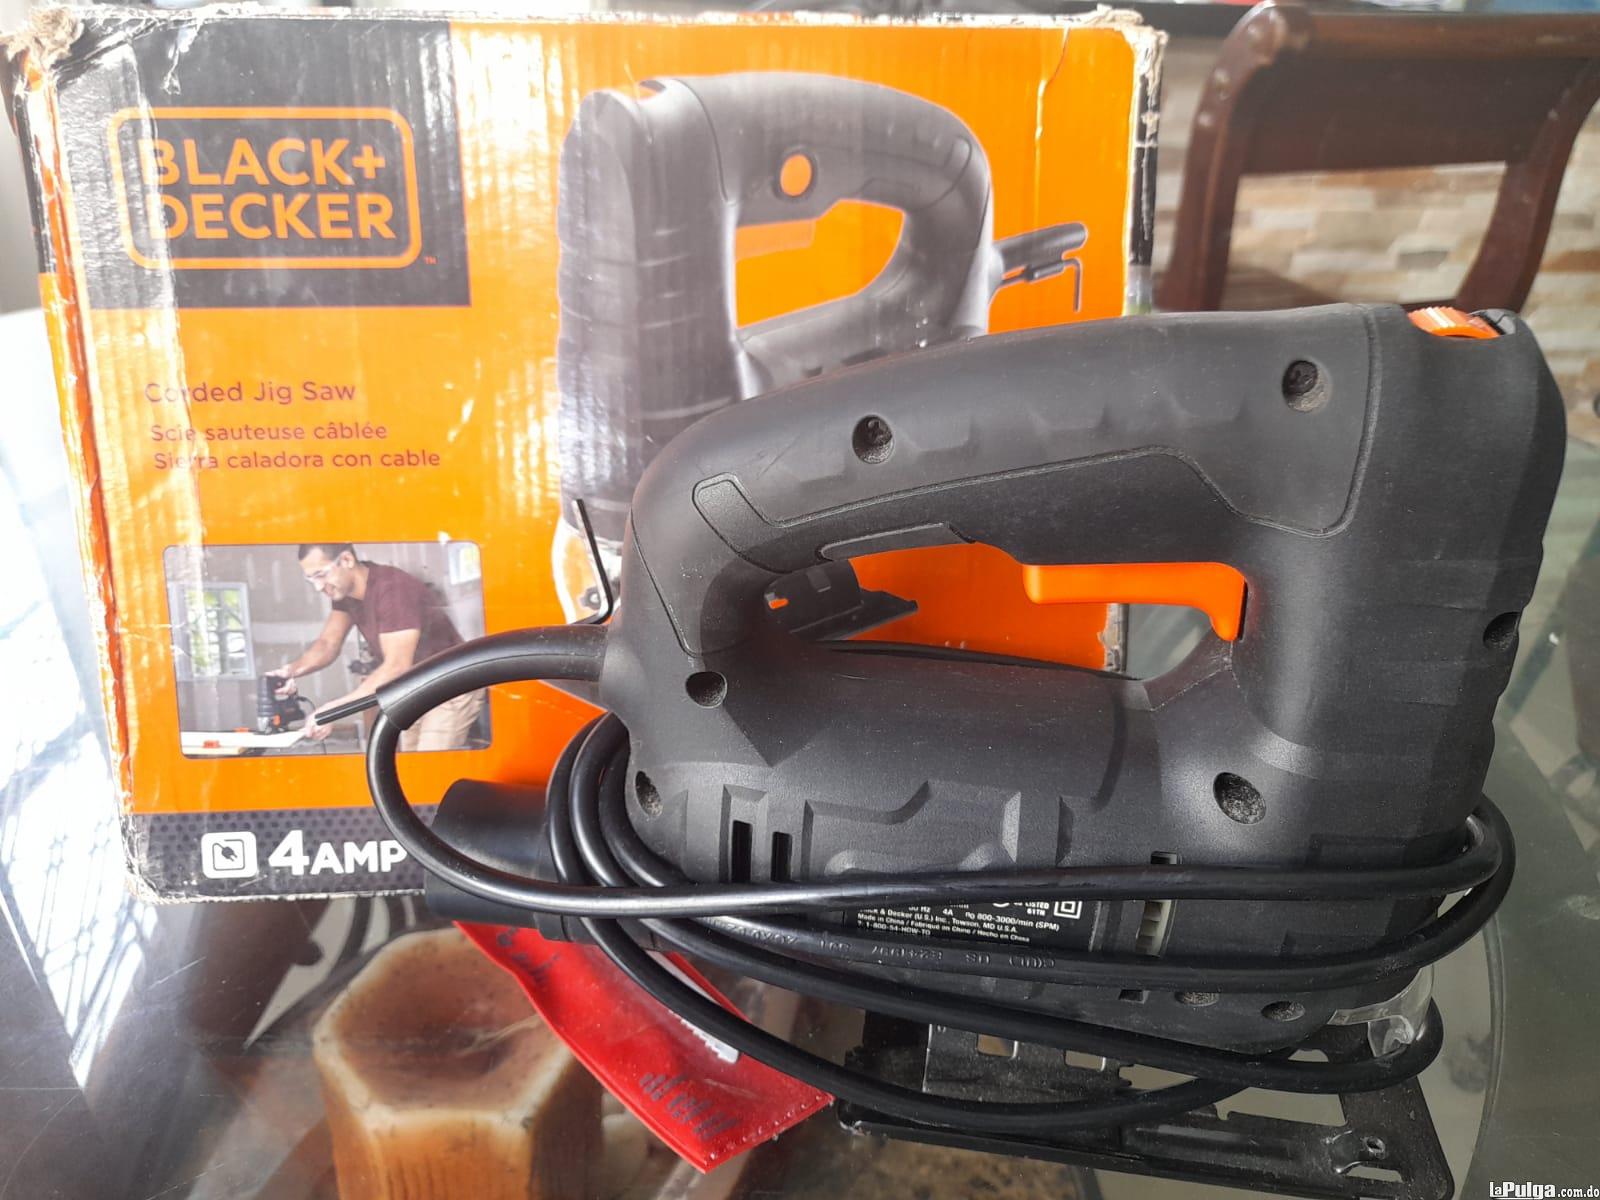 Caladora marca Black  Decker practicamente nueva Foto 7147351-3.jpg